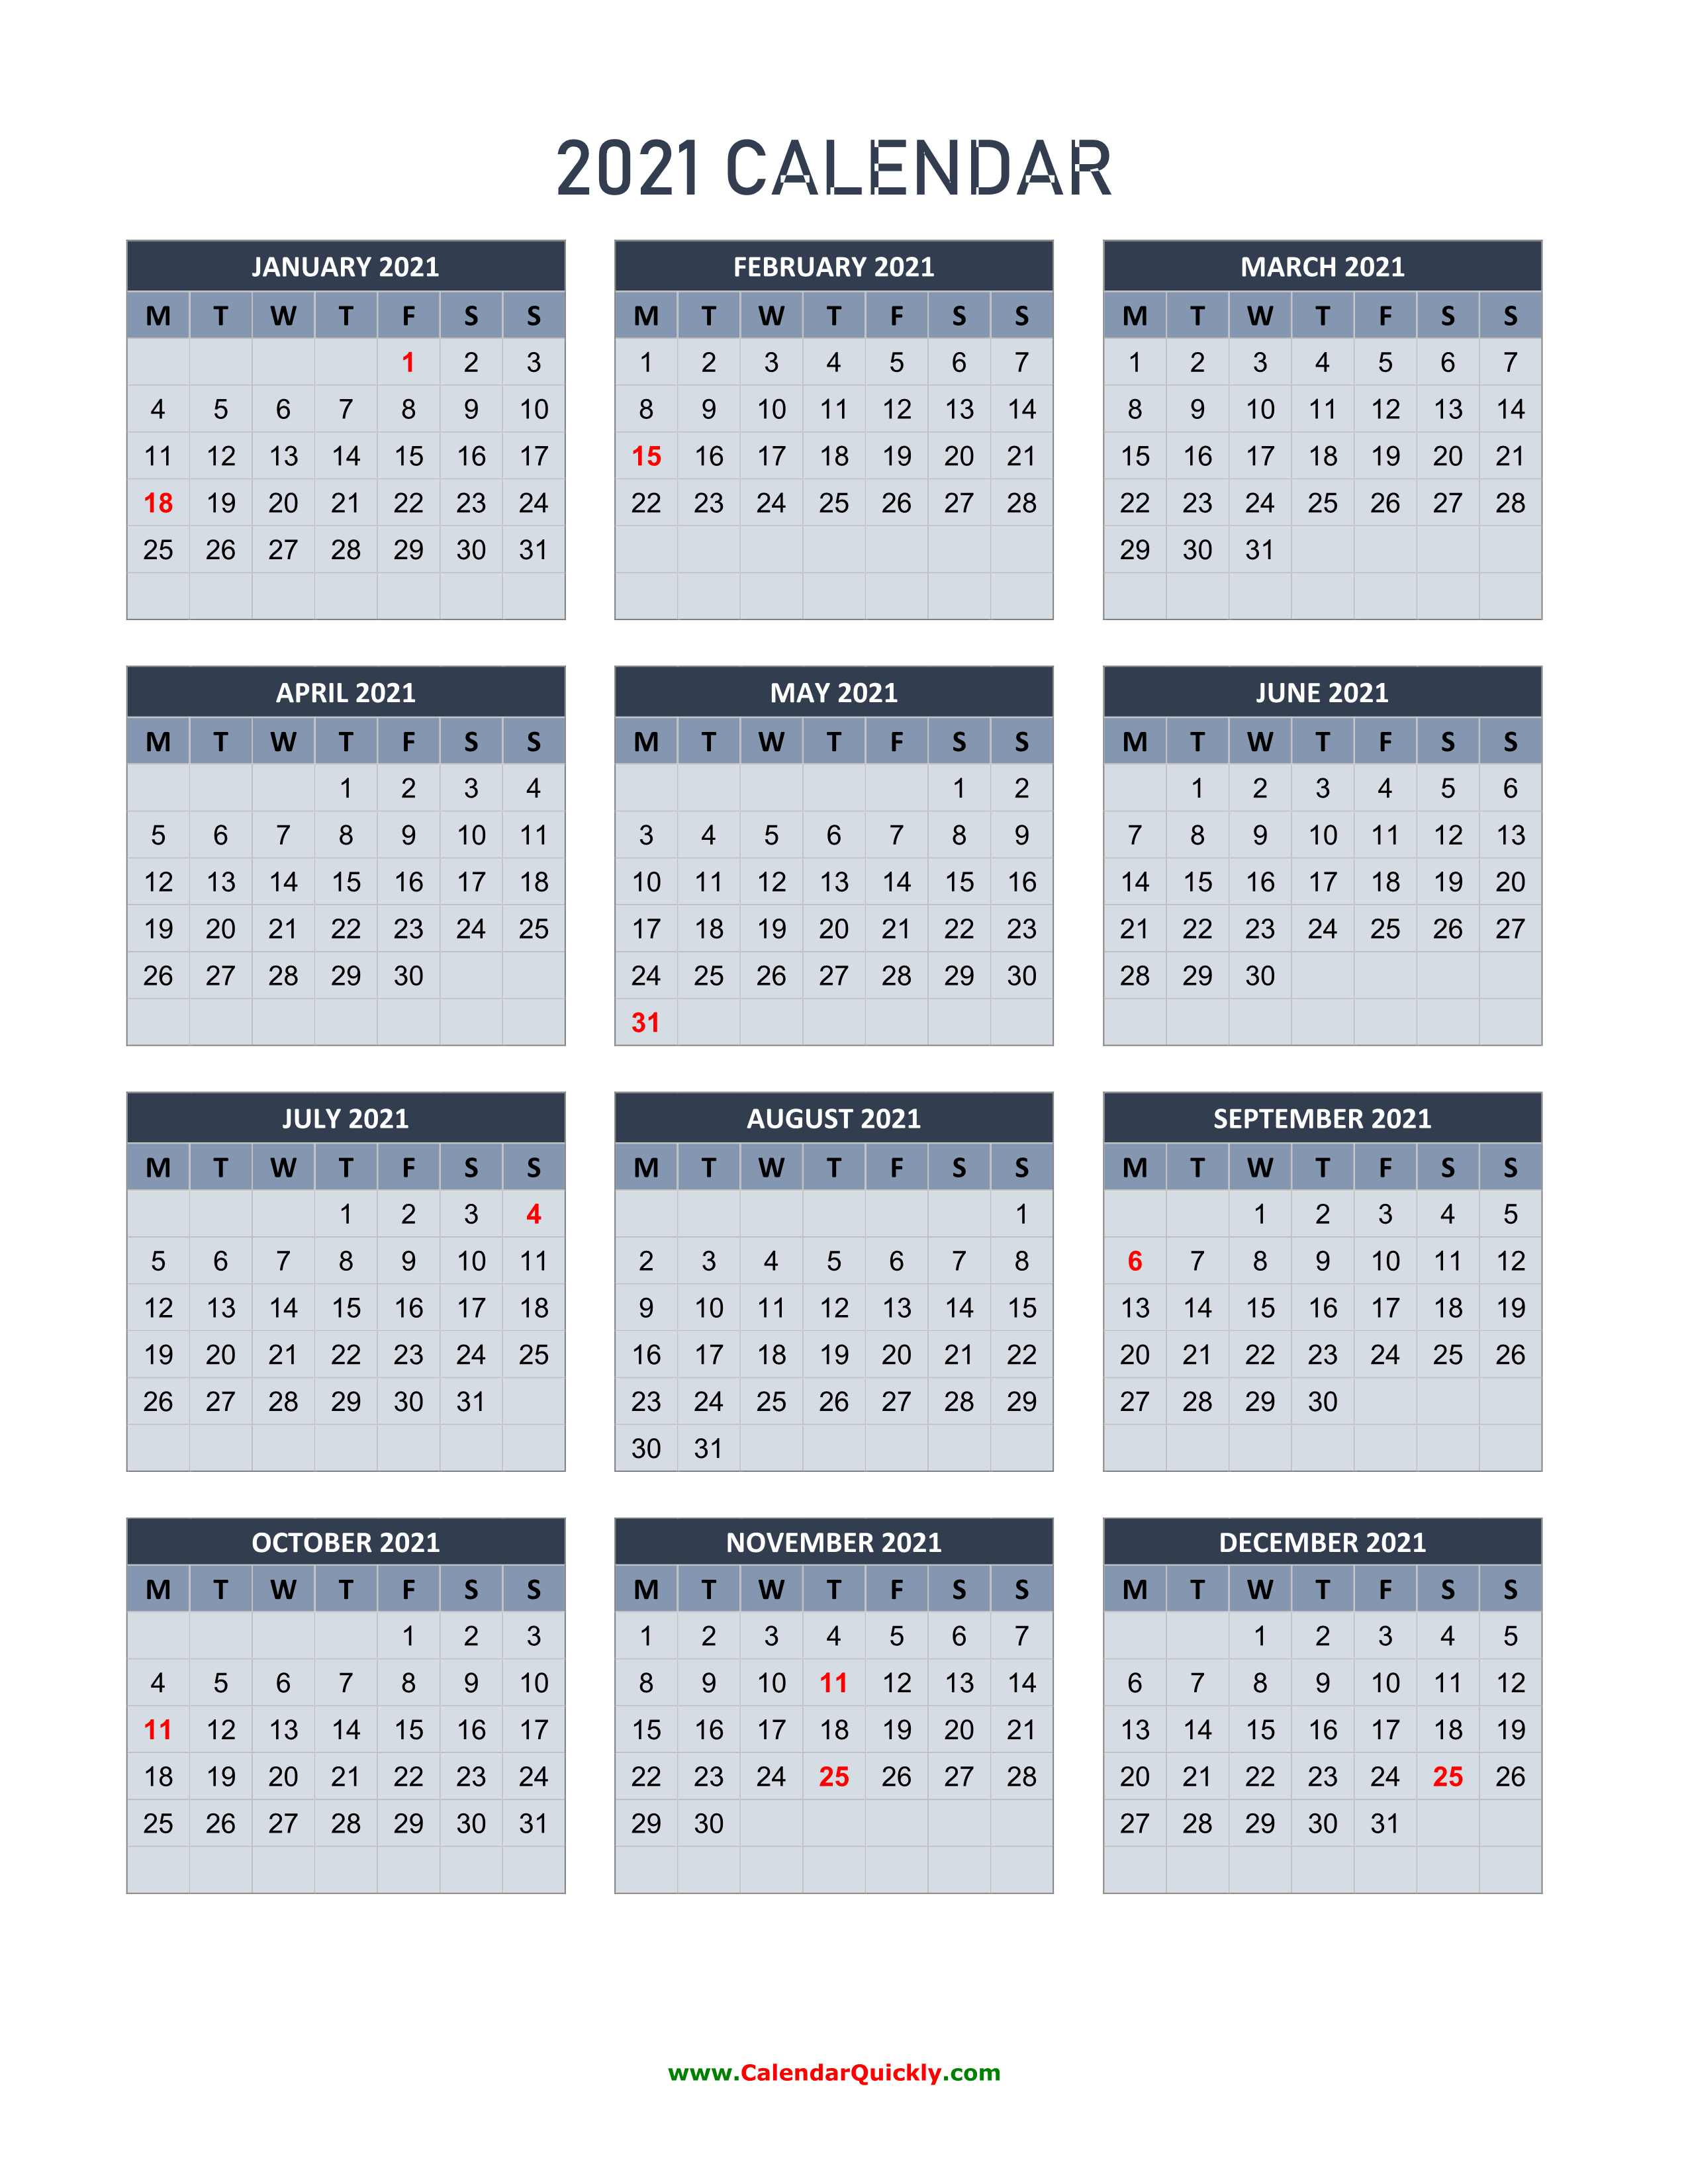 monday-2021-calendar-vertical-calendar-quickly